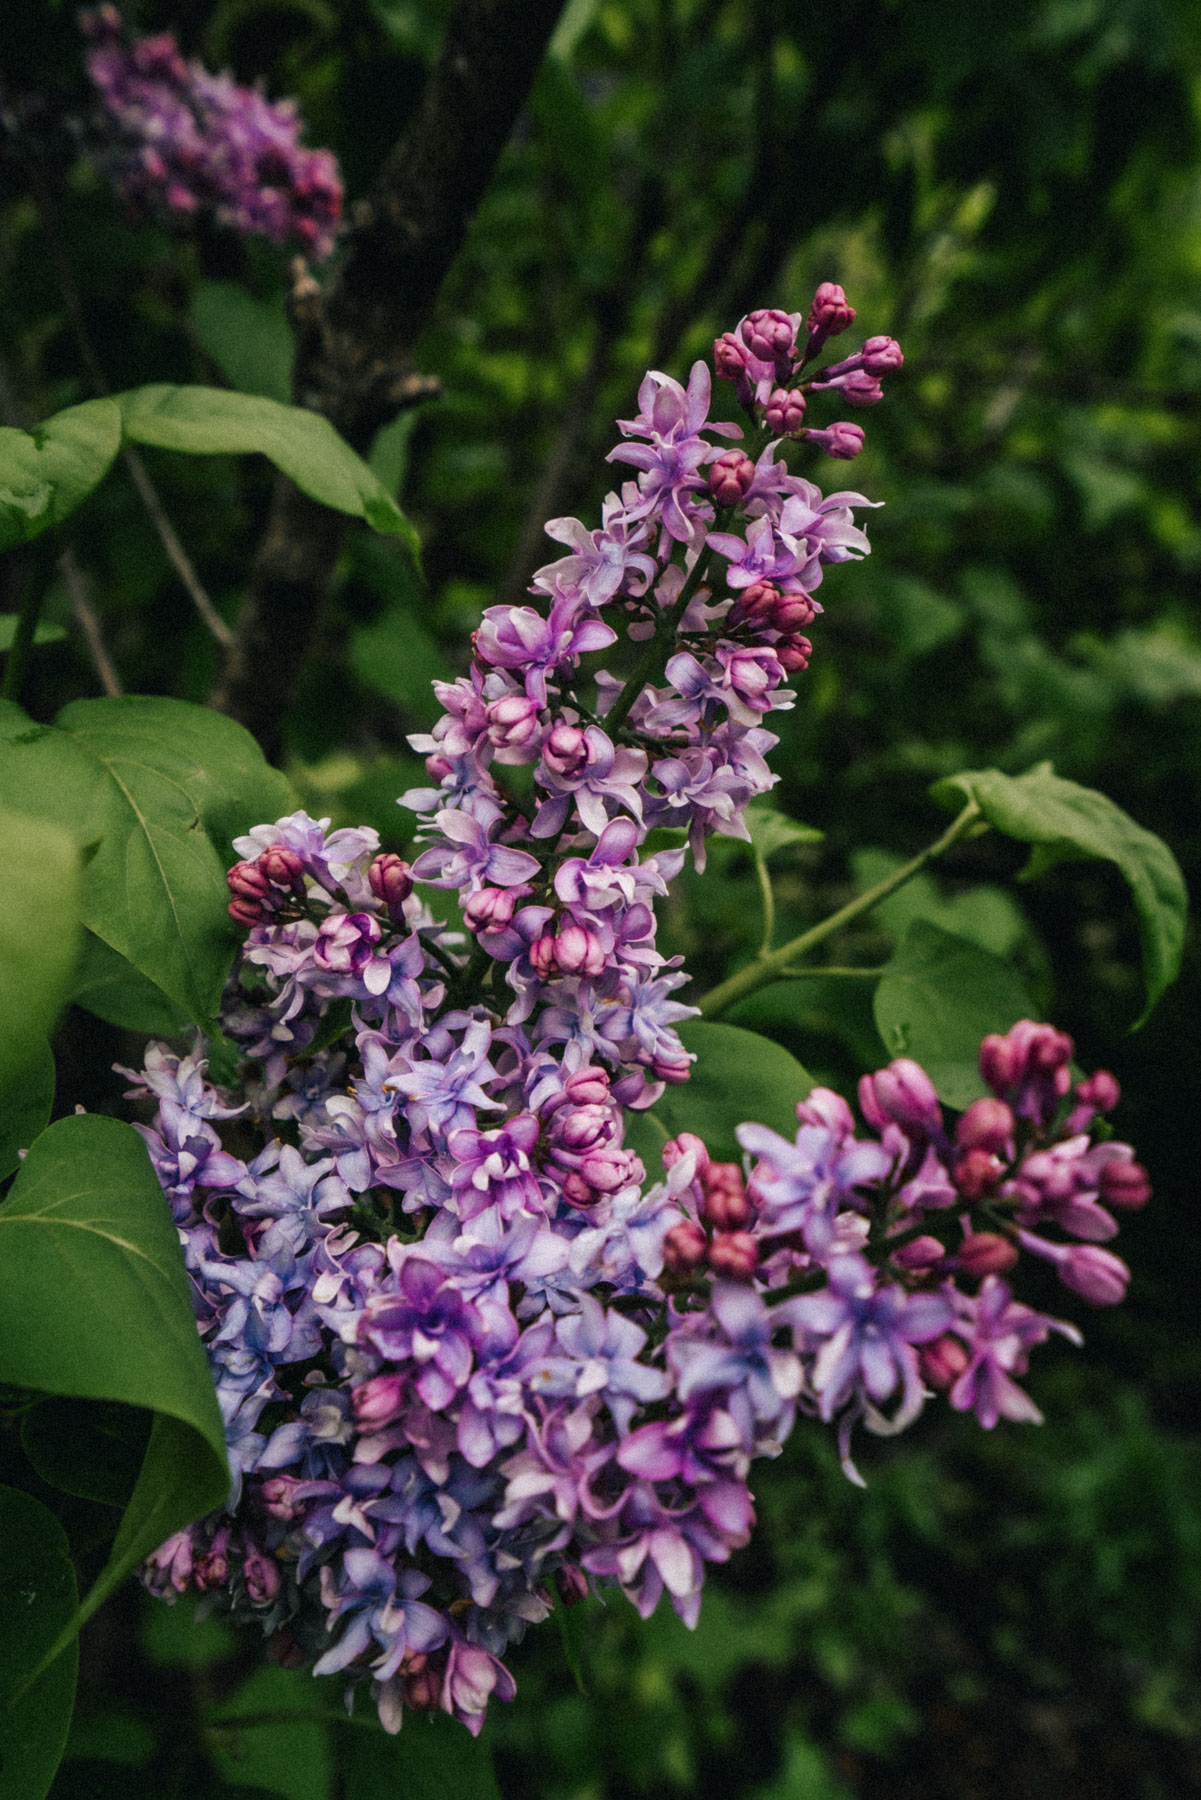 Lilac Garden in Portland Duniway Park
Best Flower Fields Near Portland, Oregon